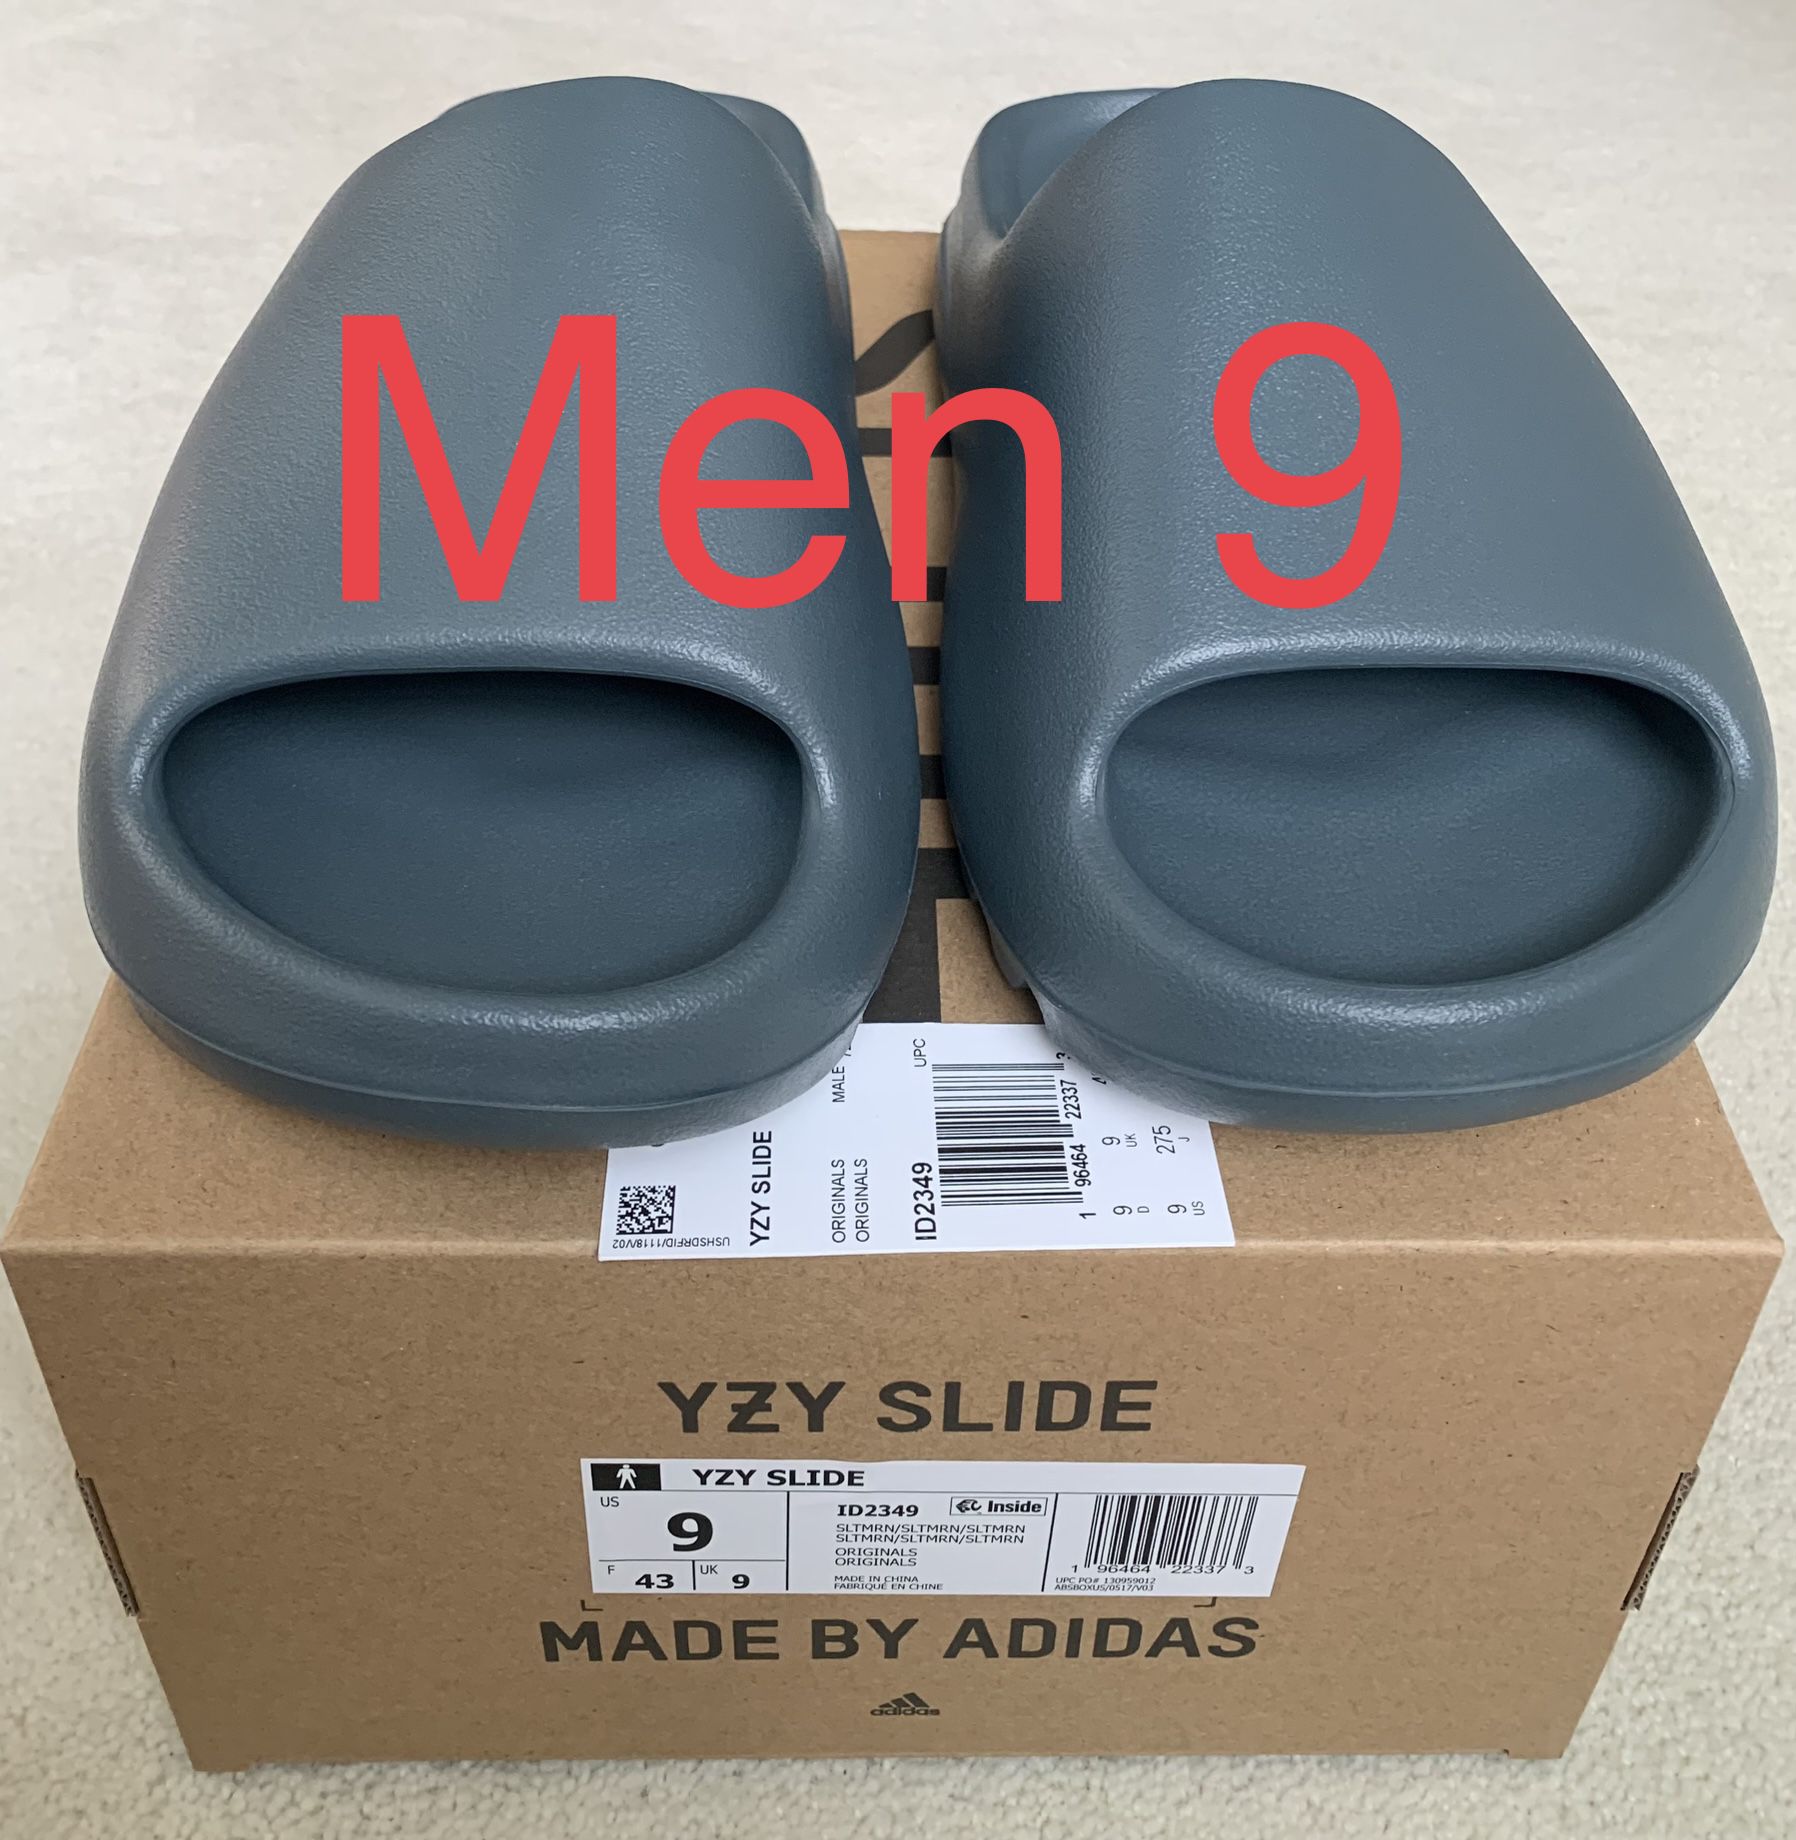 Adidas Yeezy YZY Slide Slate Marine Blue Grey Gray Color Size Sz Men 9 M / Women 10 W New Box Receipt 